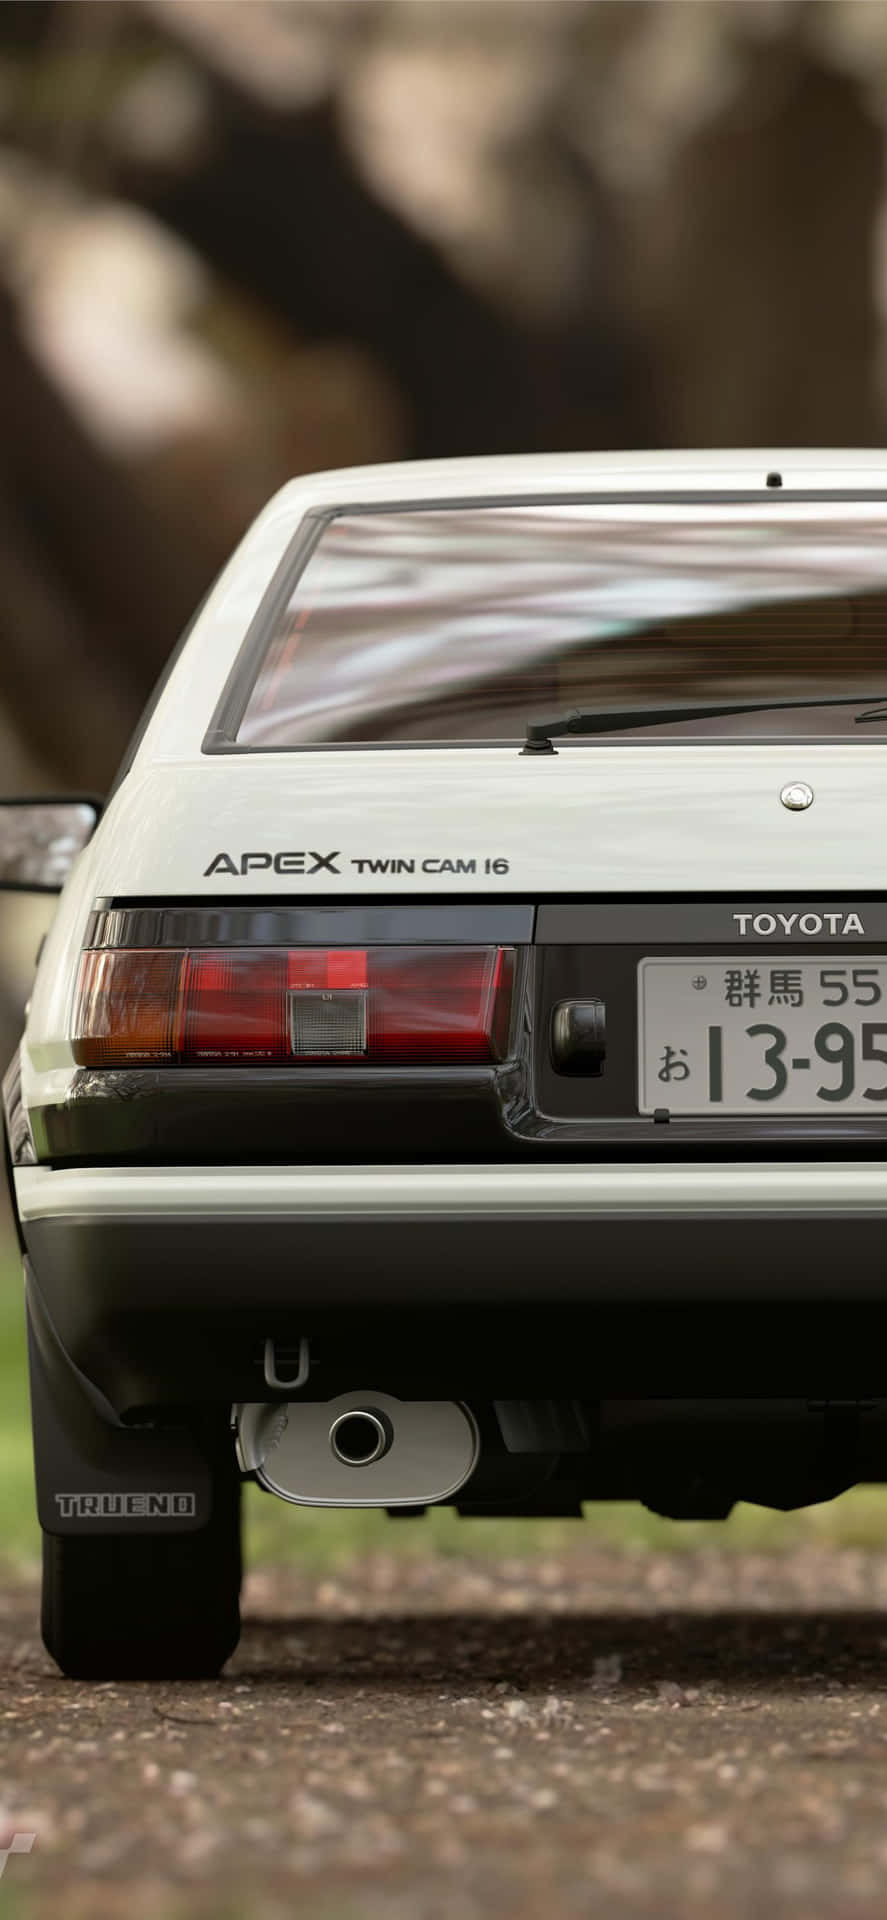 Toyota AE86, en virkelig klassisk bil fra 80'erne. Wallpaper